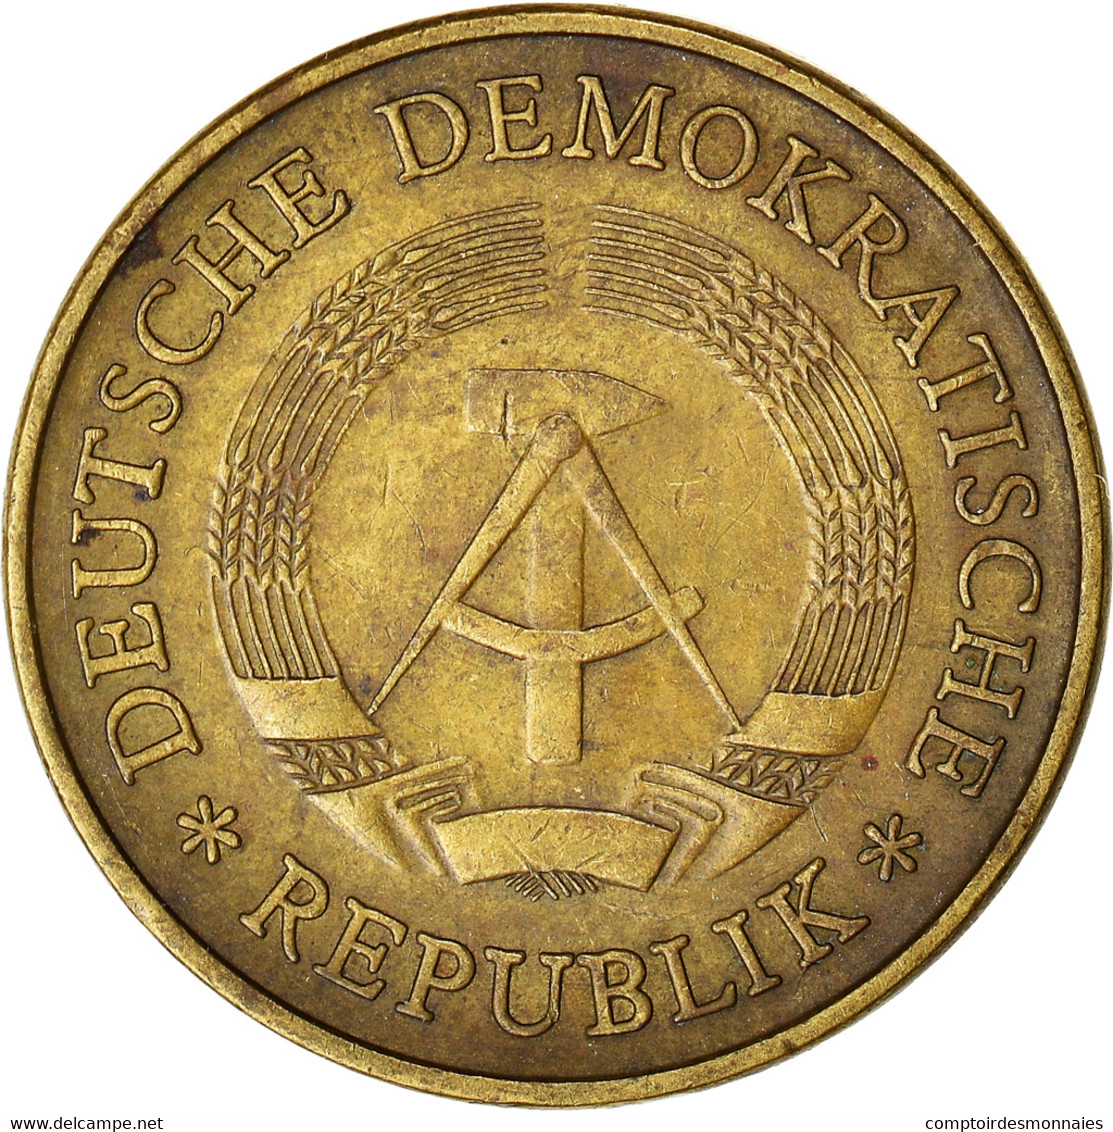 Monnaie, République Démocratique Allemande, 20 Pfennig, 1984, Berlin, TB - 20 Pfennig